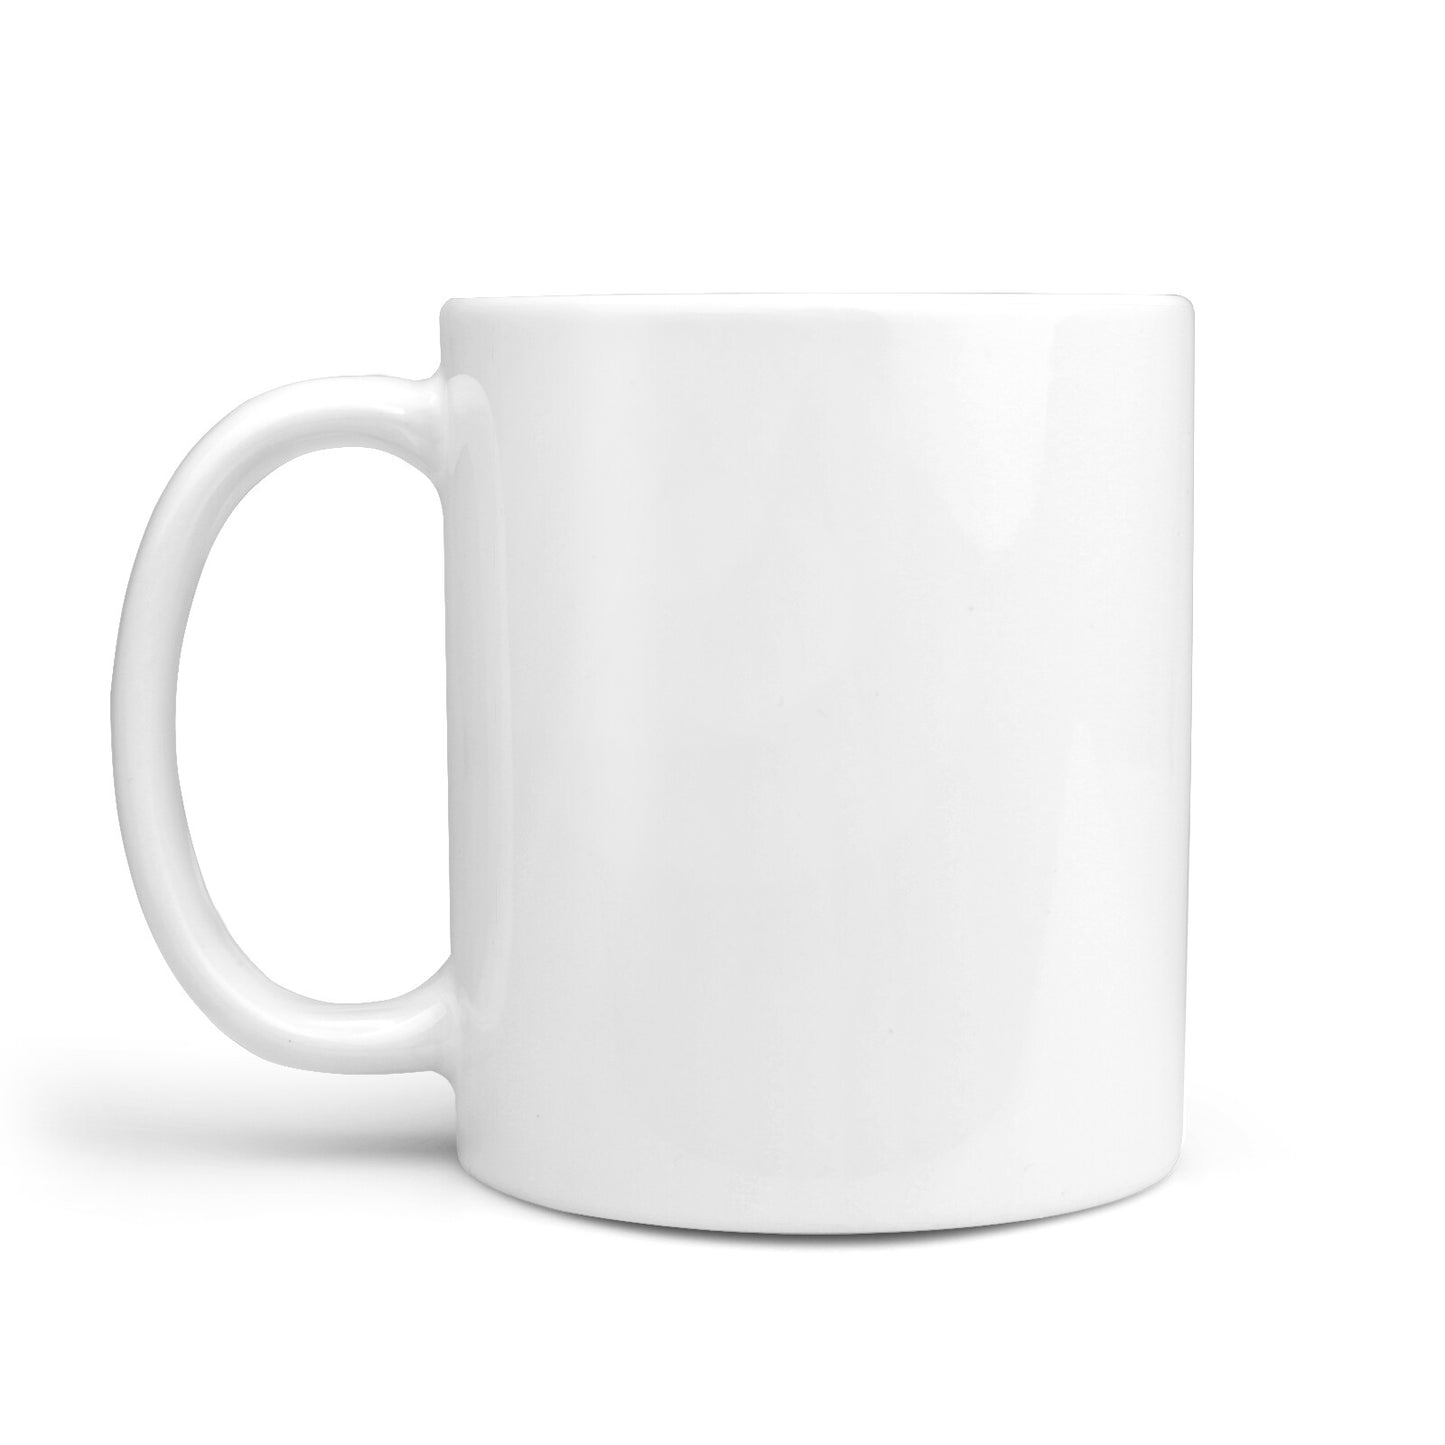 Initialled Shamrock Custom 10oz Mug Alternative Image 1